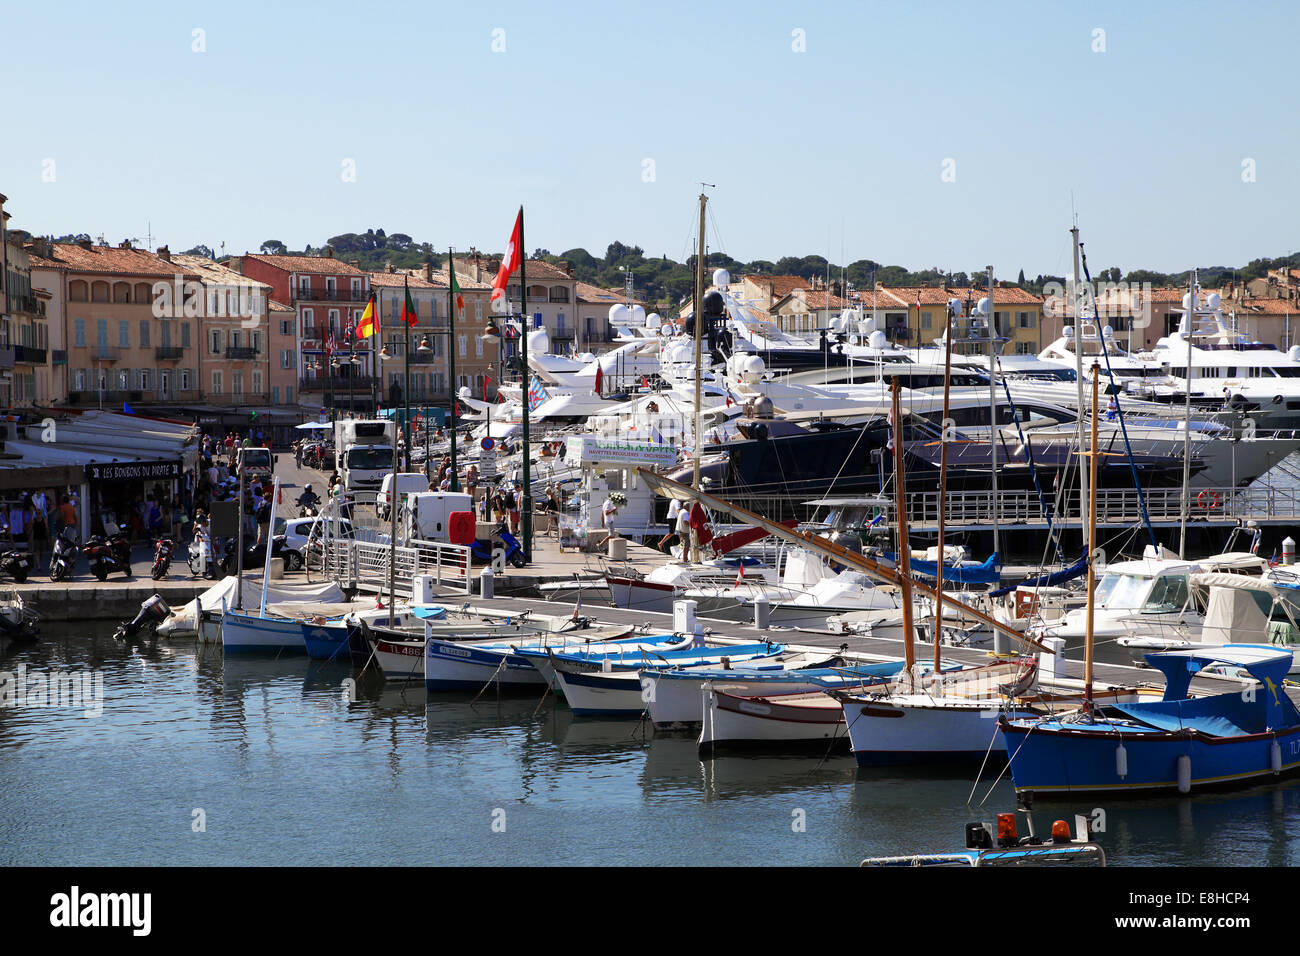 Port de Saint-Tropez.ville provençale dans le département du Var et la région Provence-Alpes-Côte d'azur du sud-est de la France.La Côte d'Azur Banque D'Images